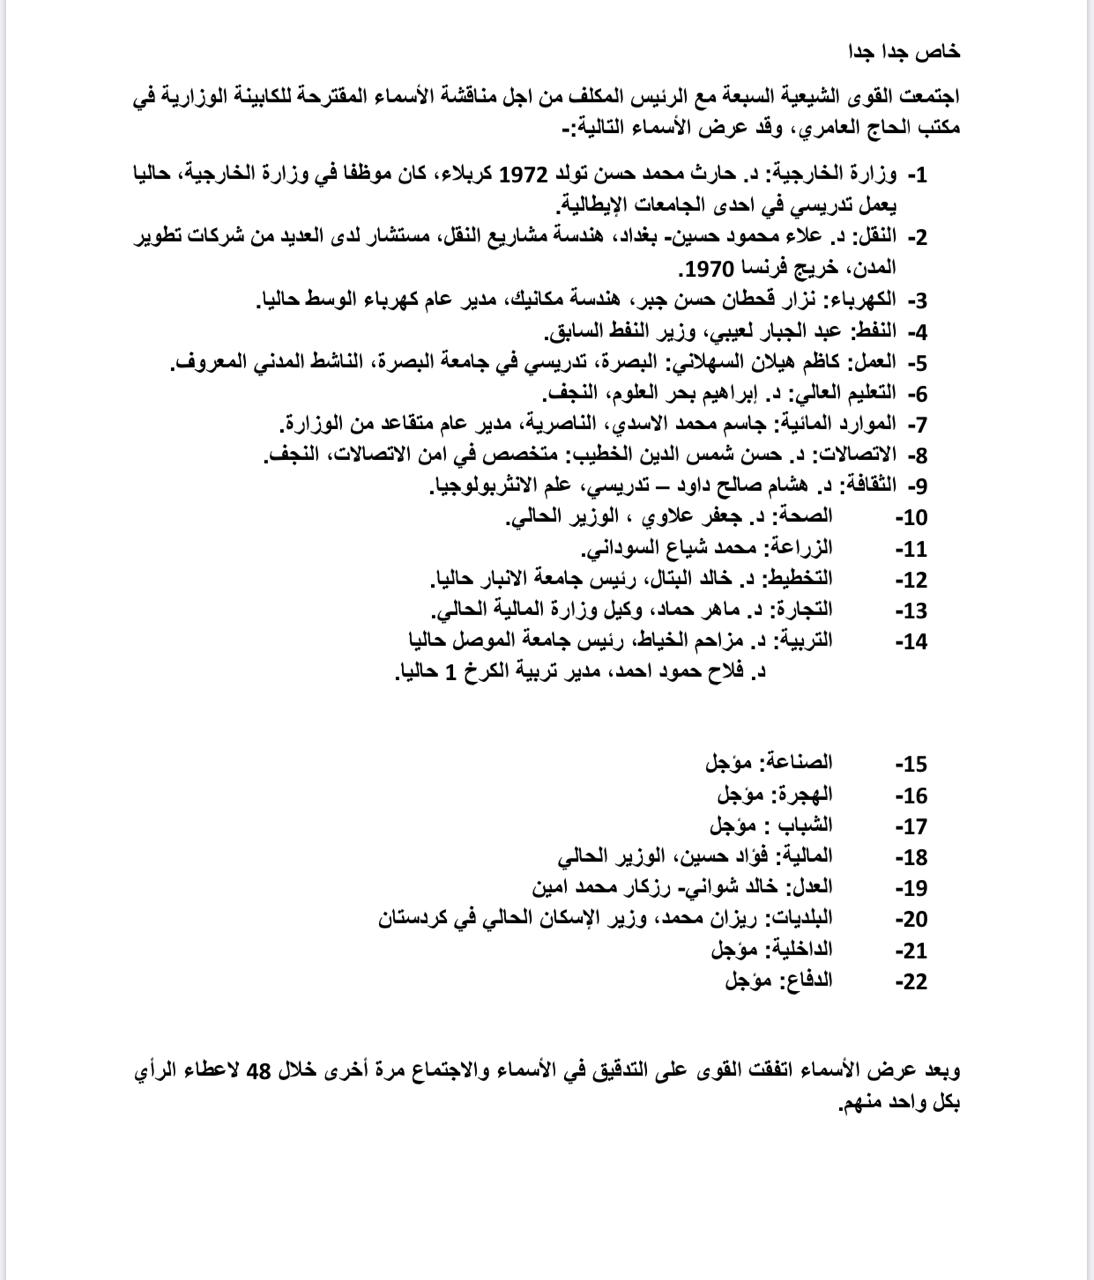 مصادر تكشف الاسماء غير النهائية لحكومة مصطفى الكاظمي